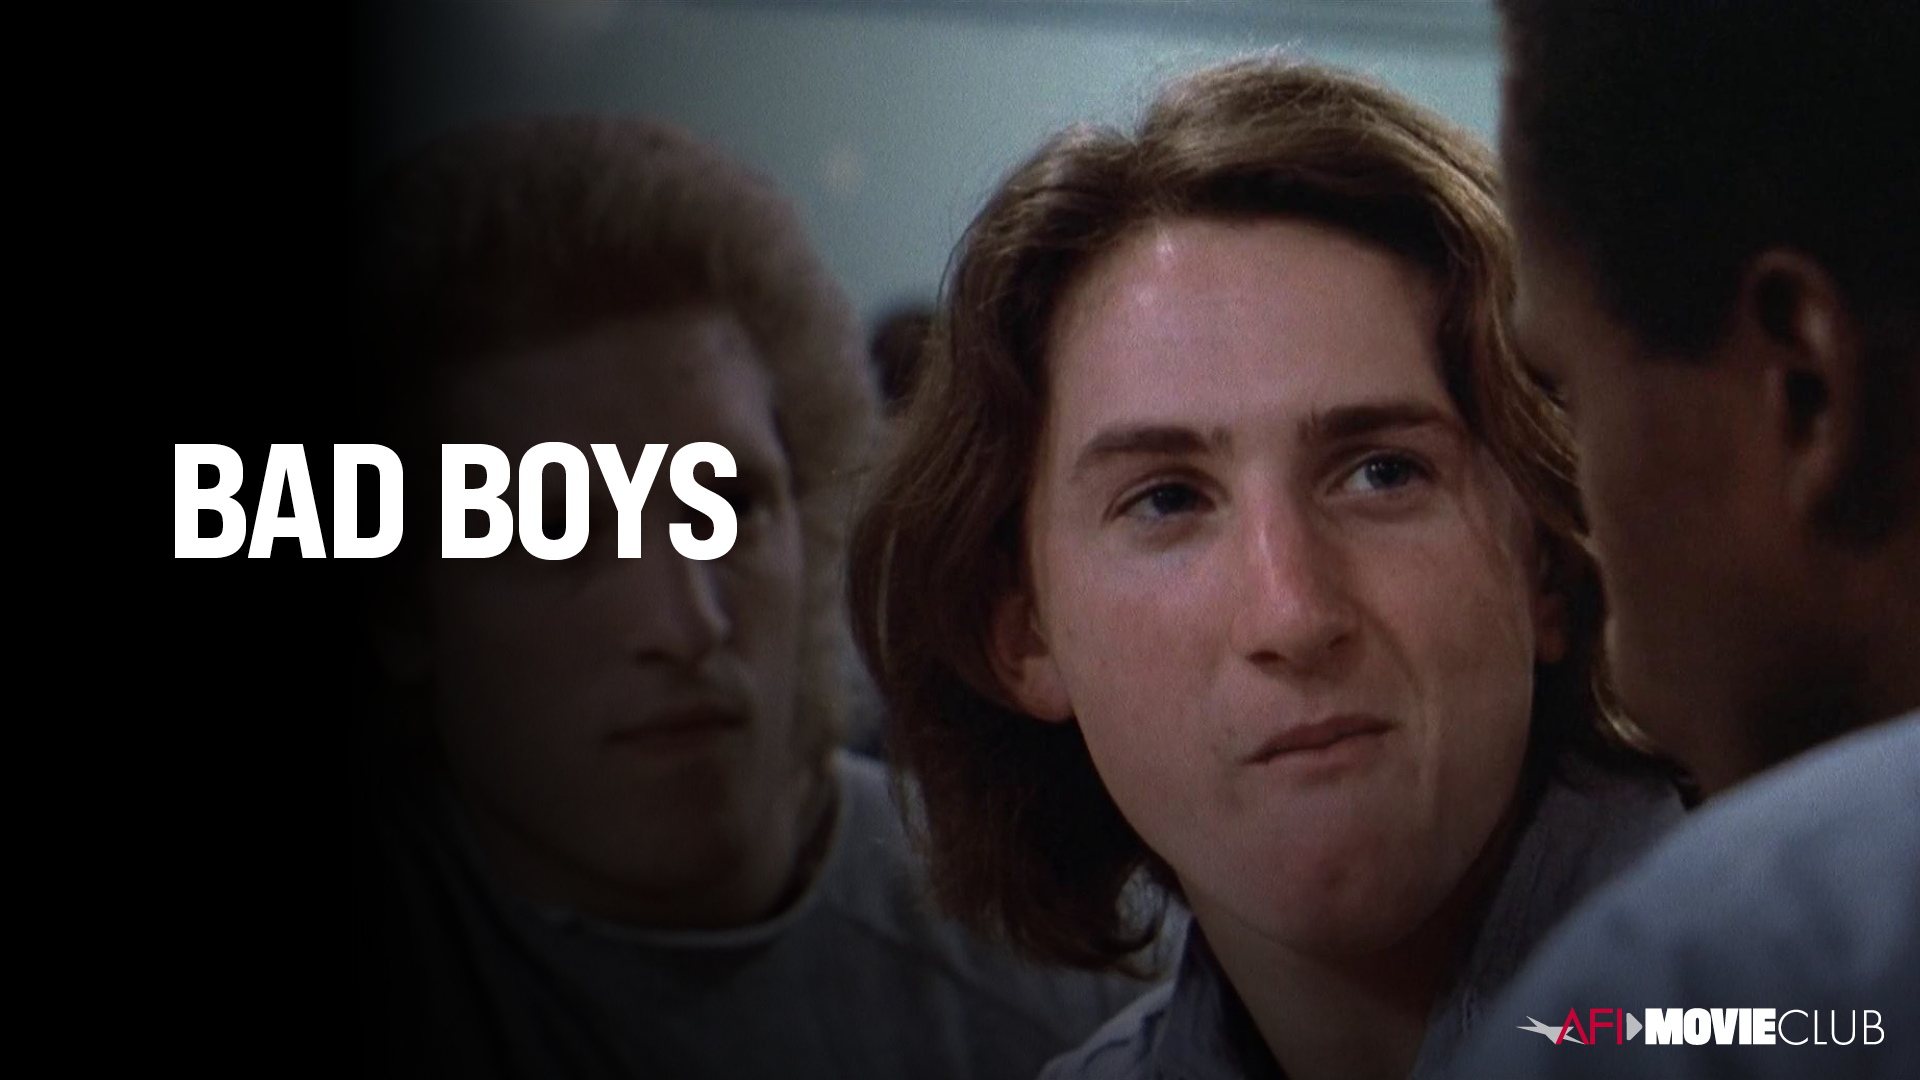 Bad Boys Film Still - Clancy Brown and Sean Penn